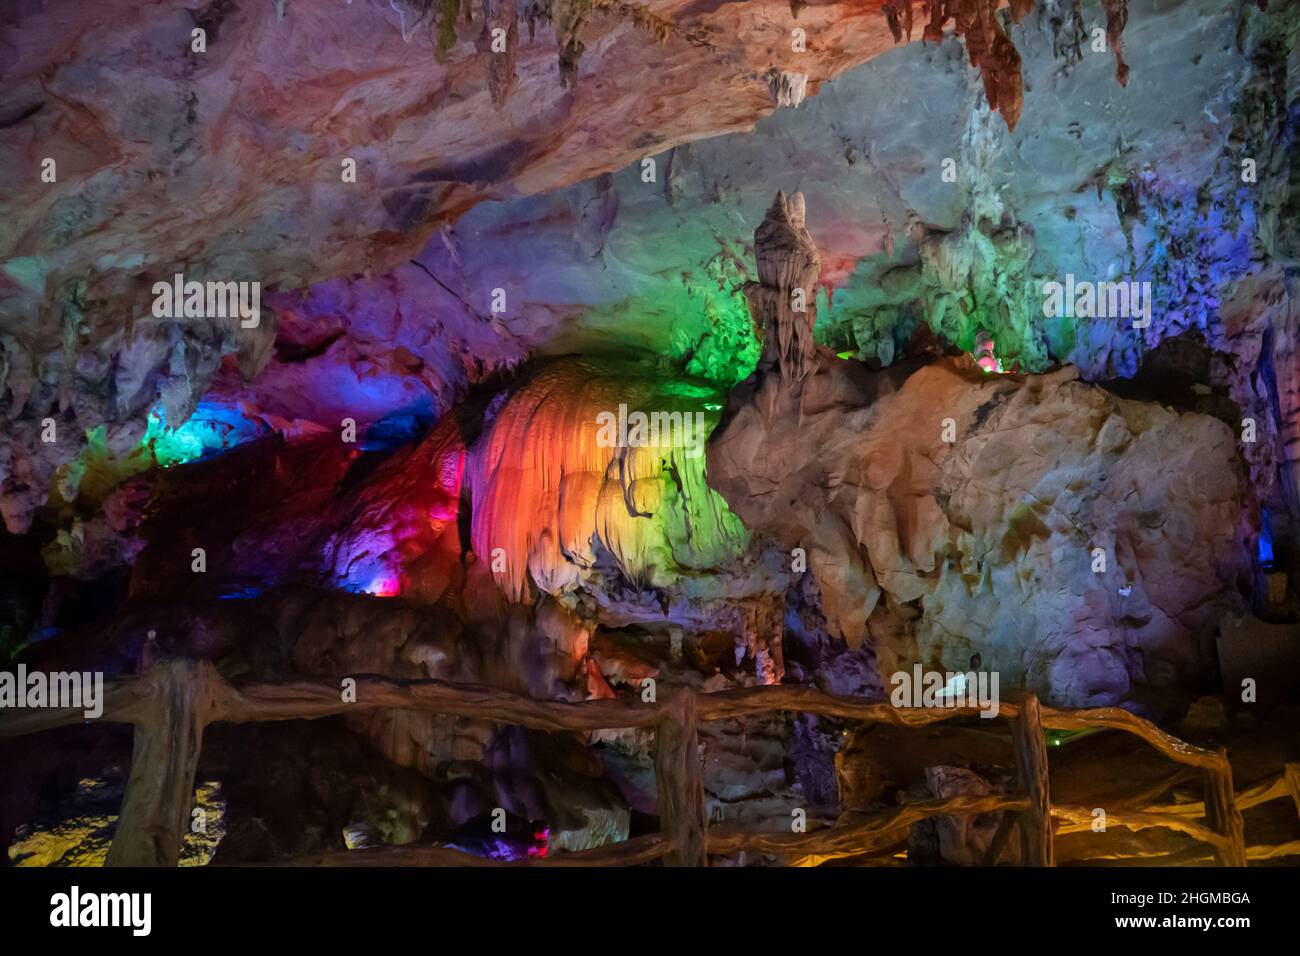 Grotte karstique souterraine illuminée par une lumière colorée Banque D'Images